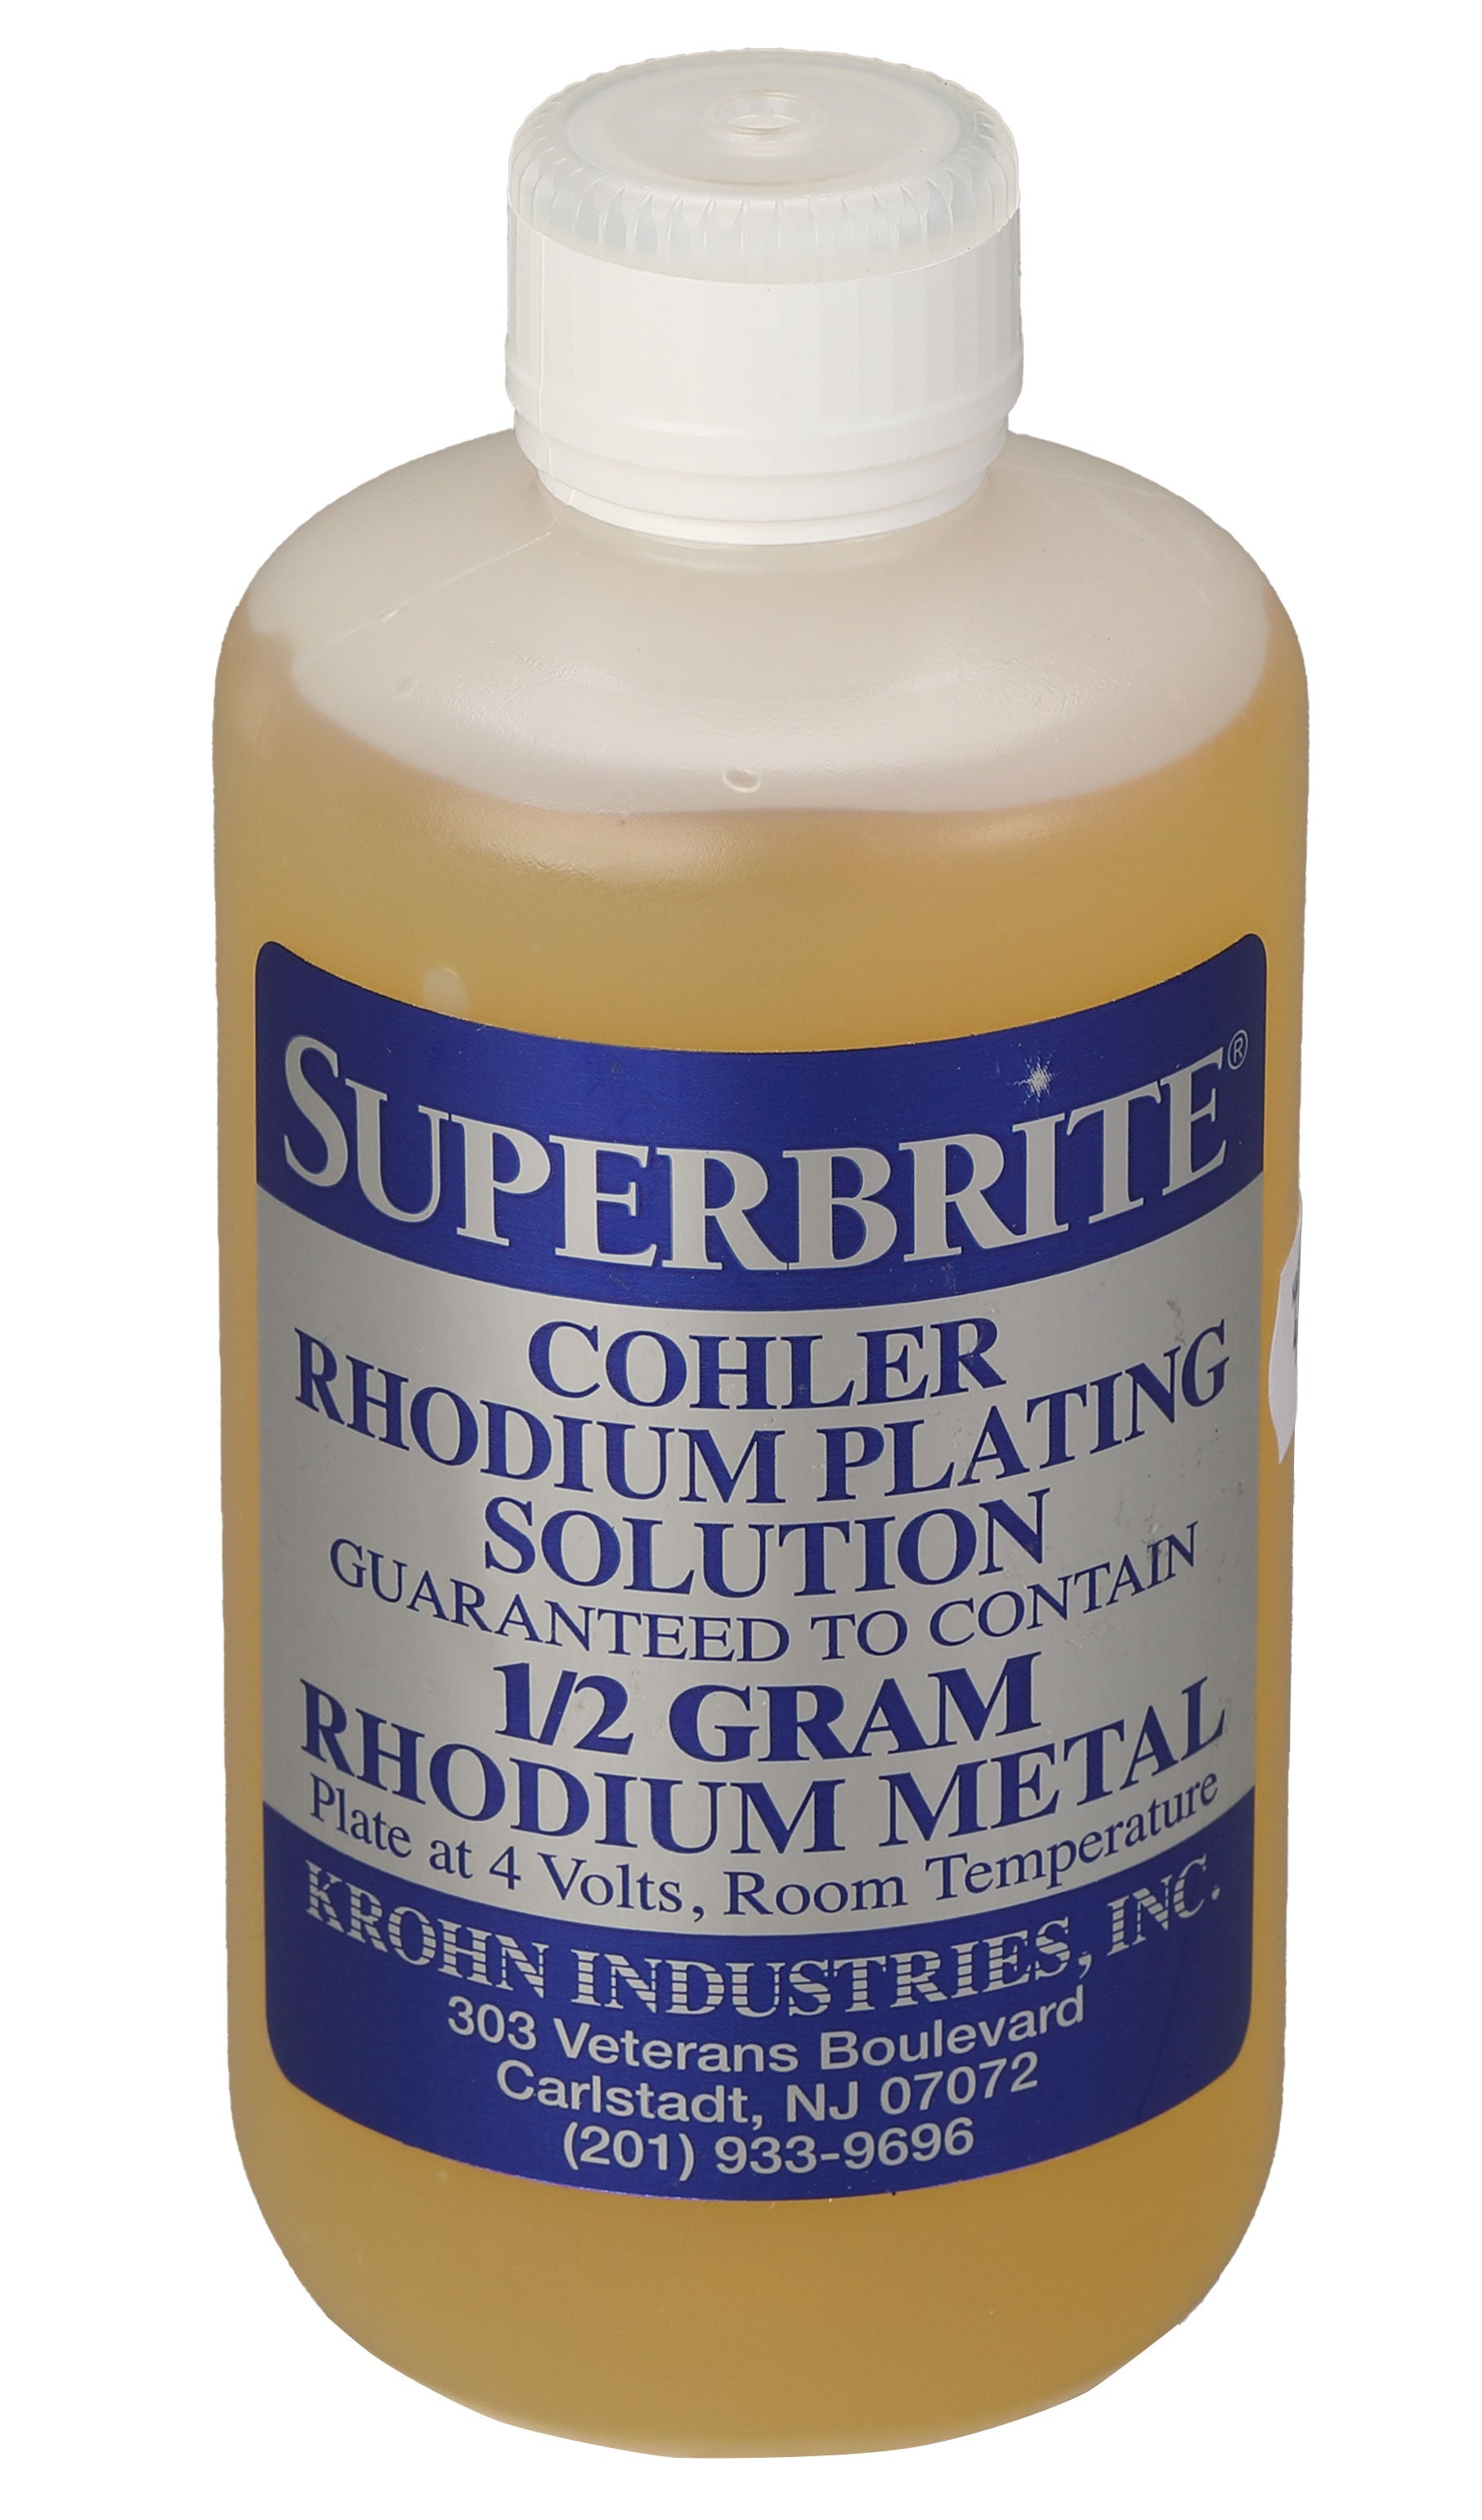 0.5 Gram Superbrite Rhodium Plating Solution